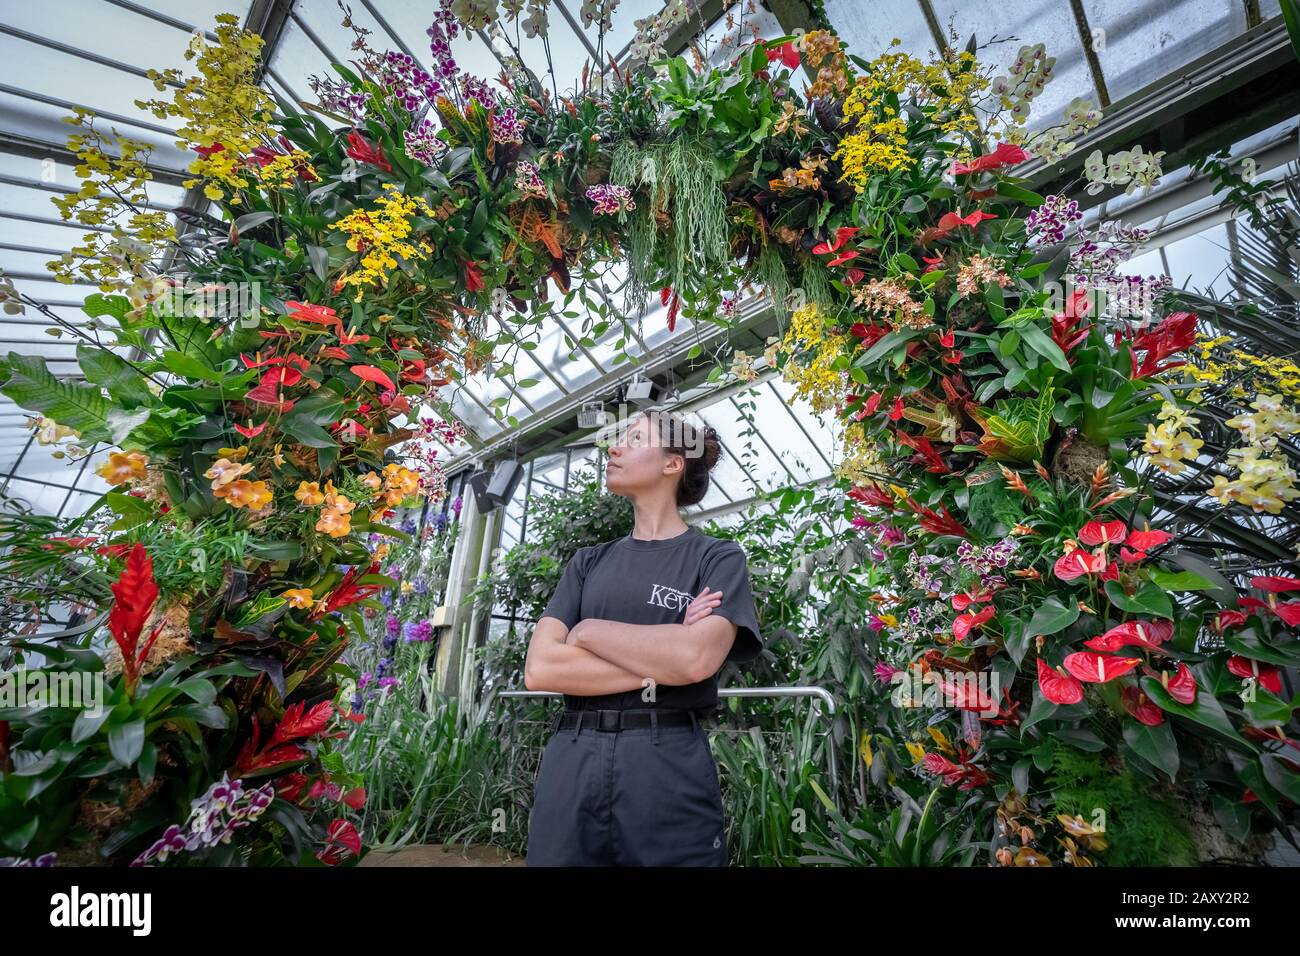 Festival De Orquídeas Kew 2020: Indonesia. Festival anual de orquídeas sobre el país de Indonesia con más de 5,000 coloridas orquídeas y plantas tropicales. Foto de stock